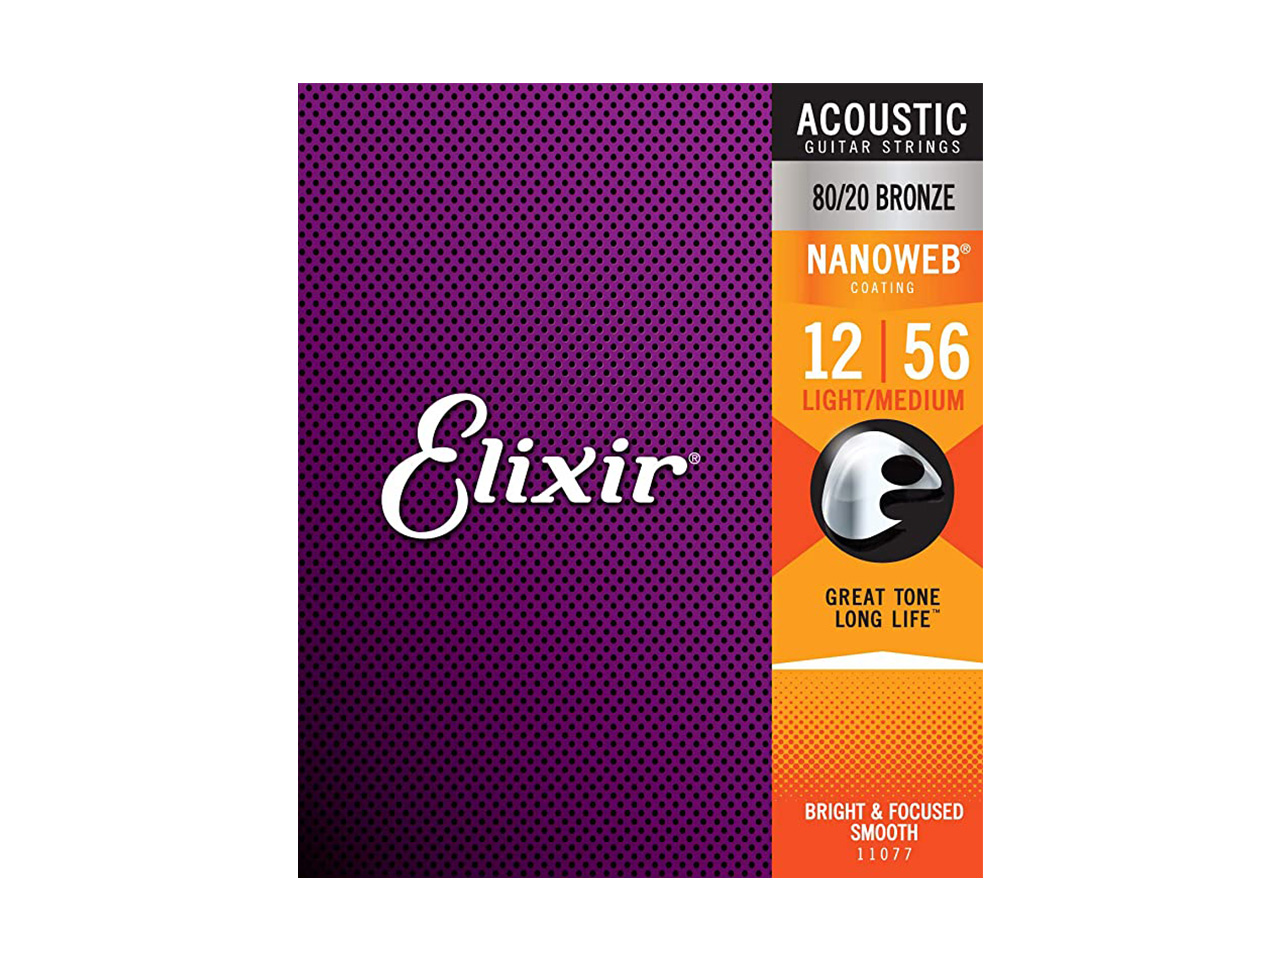 Elixir(エリクサー) NANOWEB Acoustic 80/20 Bronze Light Medium【11077】 / 012-056 (アコースティックギター弦)